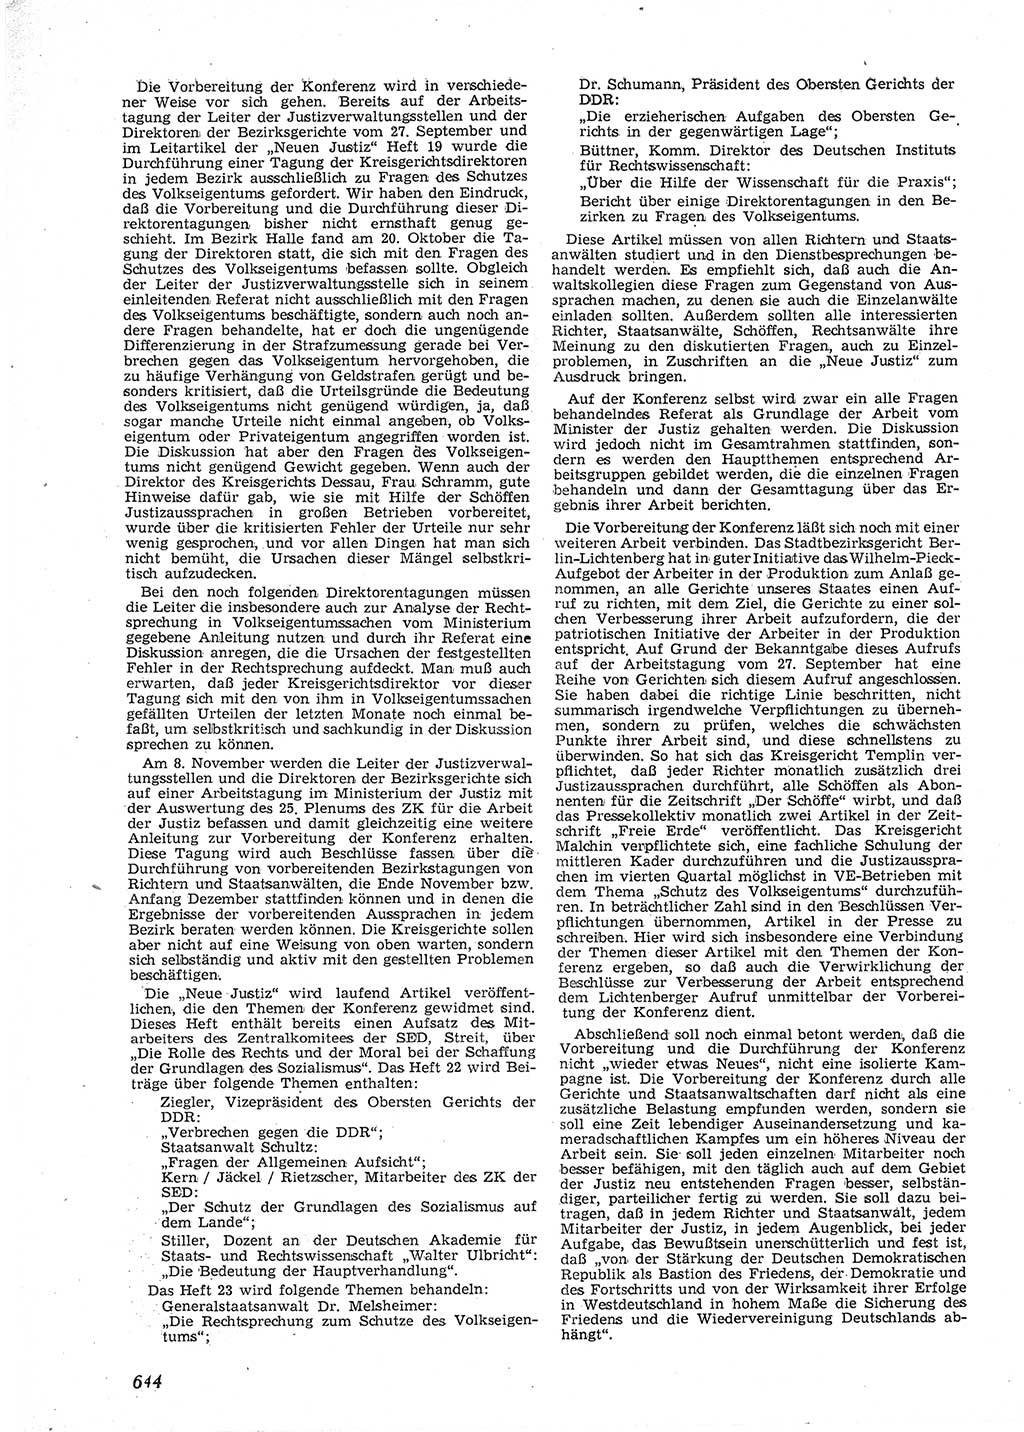 Neue Justiz (NJ), Zeitschrift für Recht und Rechtswissenschaft [Deutsche Demokratische Republik (DDR)], 9. Jahrgang 1955, Seite 644 (NJ DDR 1955, S. 644)